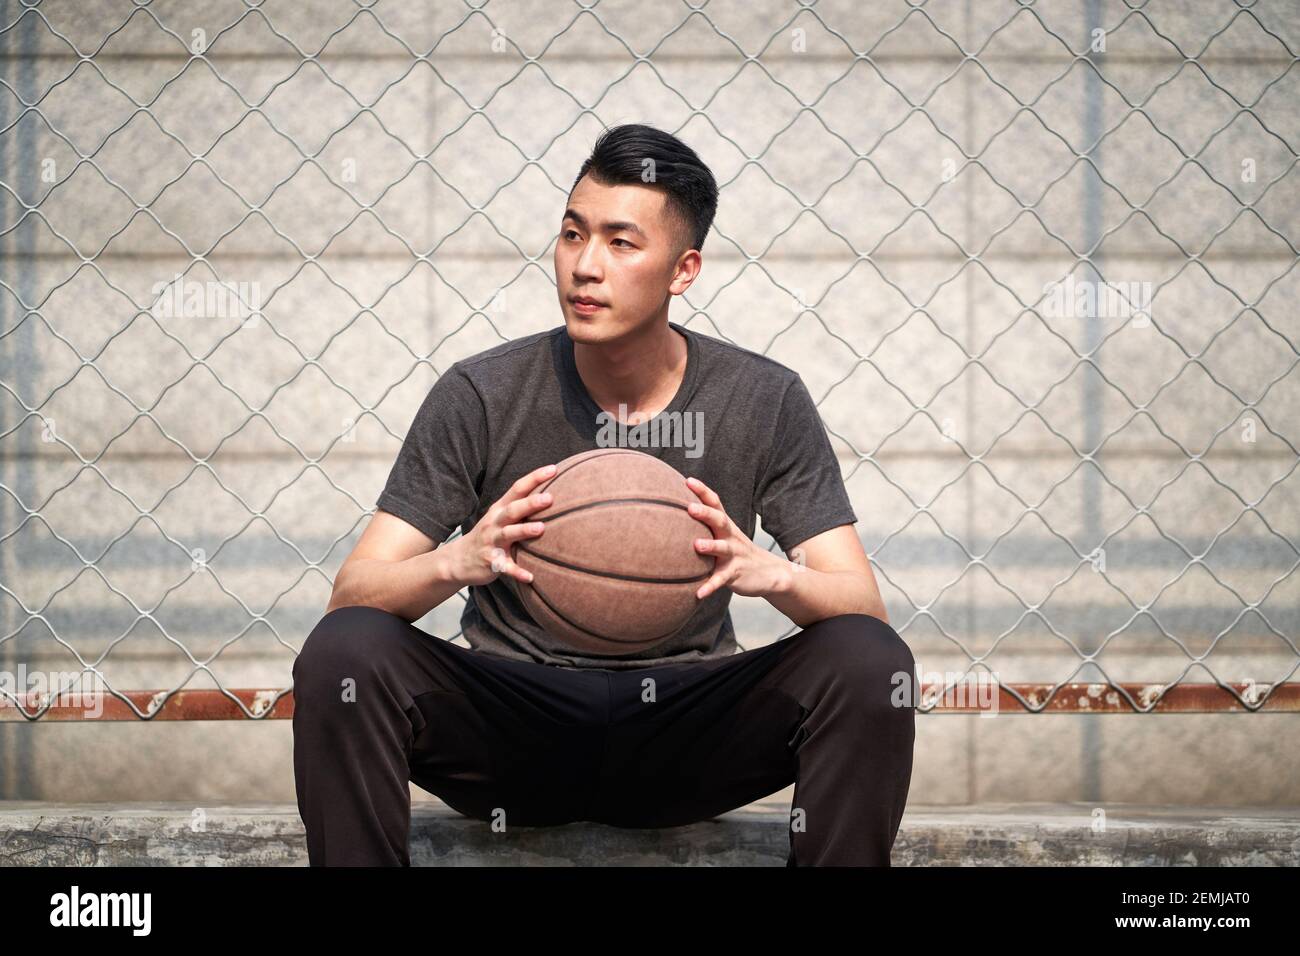 joven jugador de baloncesto asiático con una pelota sentada descansando corte Foto de stock